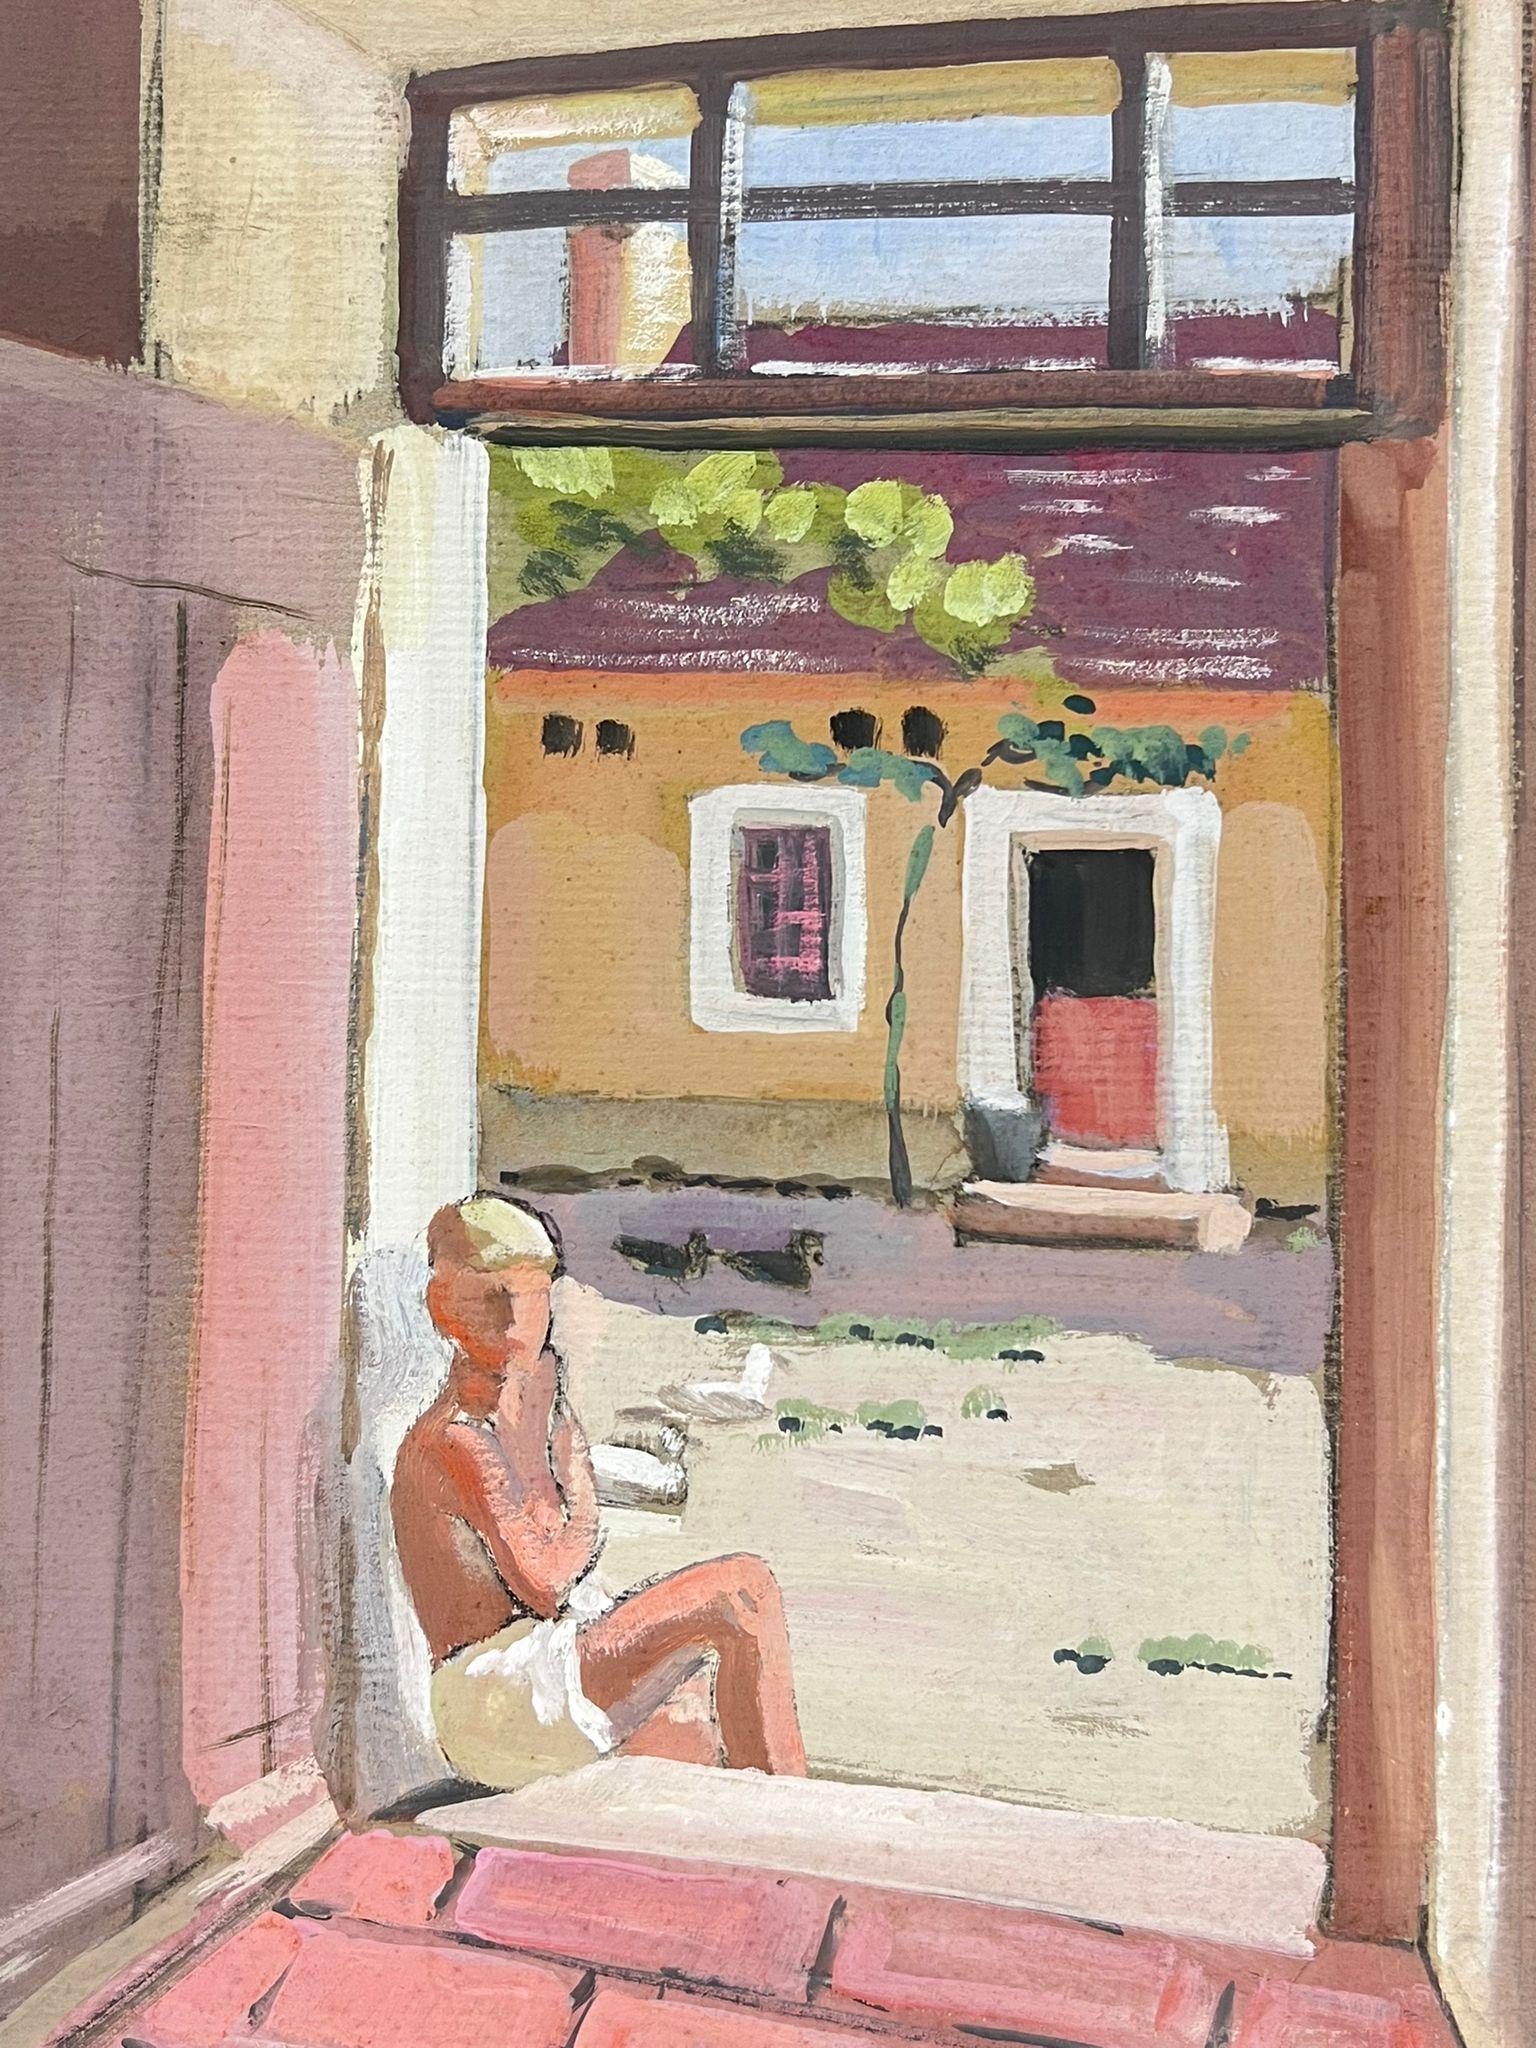 Mannequin impressionniste français des années 1930 encadré de porte de maison en pierre rose  - Impressionnisme Painting par Y. Blanchon